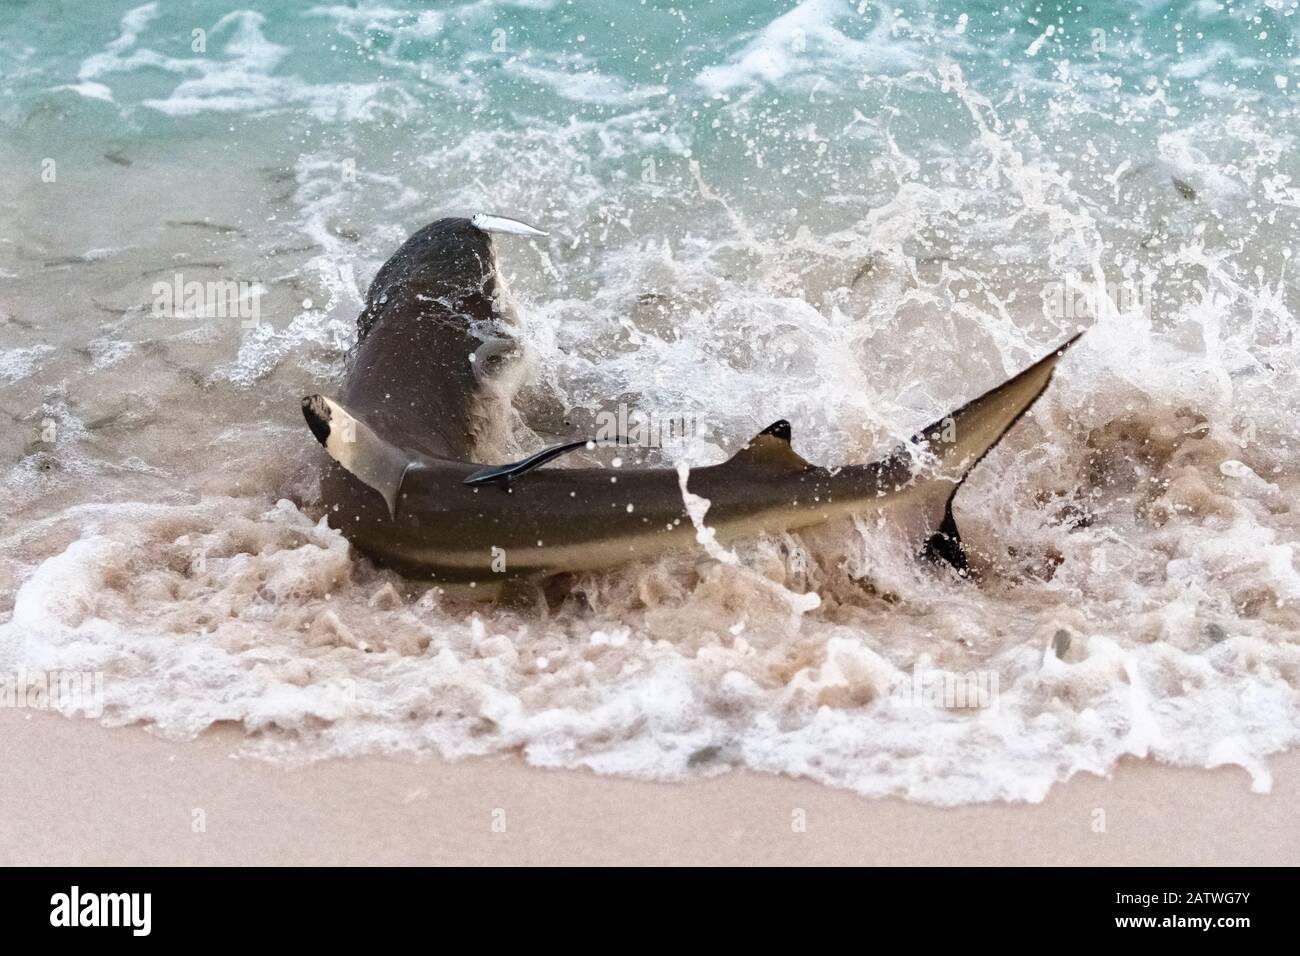 Le requin de récif de la pointe noire (Carcharhinus melanopterus) se braque pour attraper des sardines. Tonga Pacifique Sud. Banque D'Images